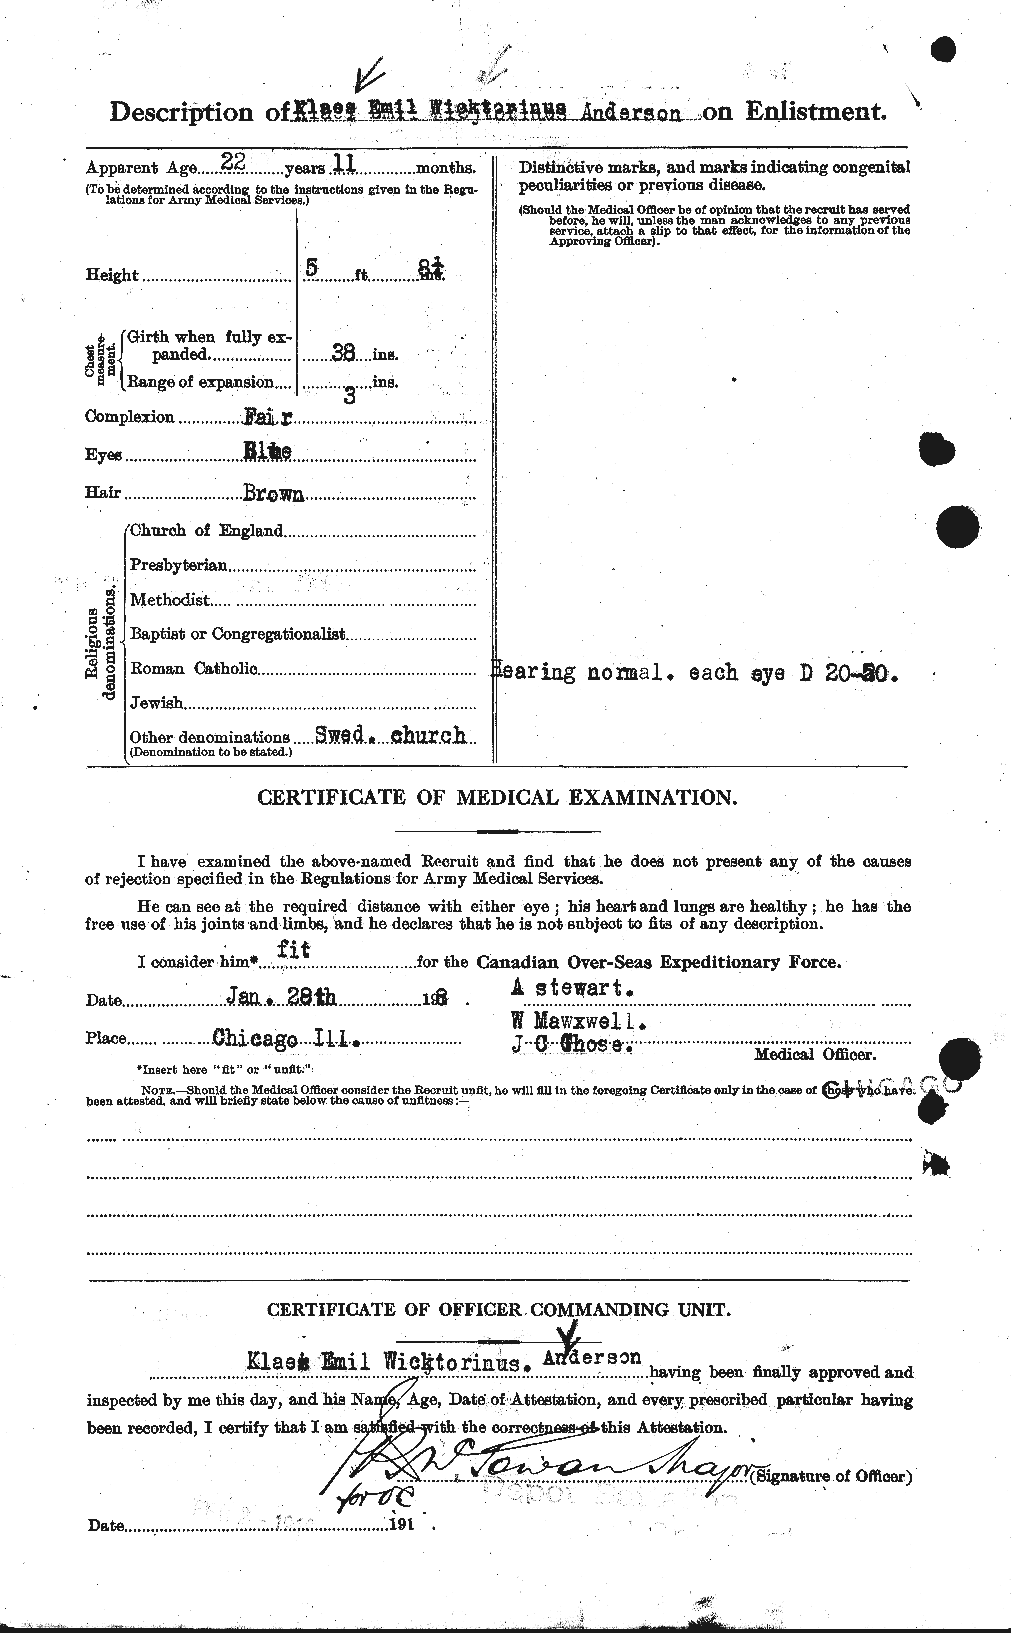 Dossiers du Personnel de la Première Guerre mondiale - CEC 207538b